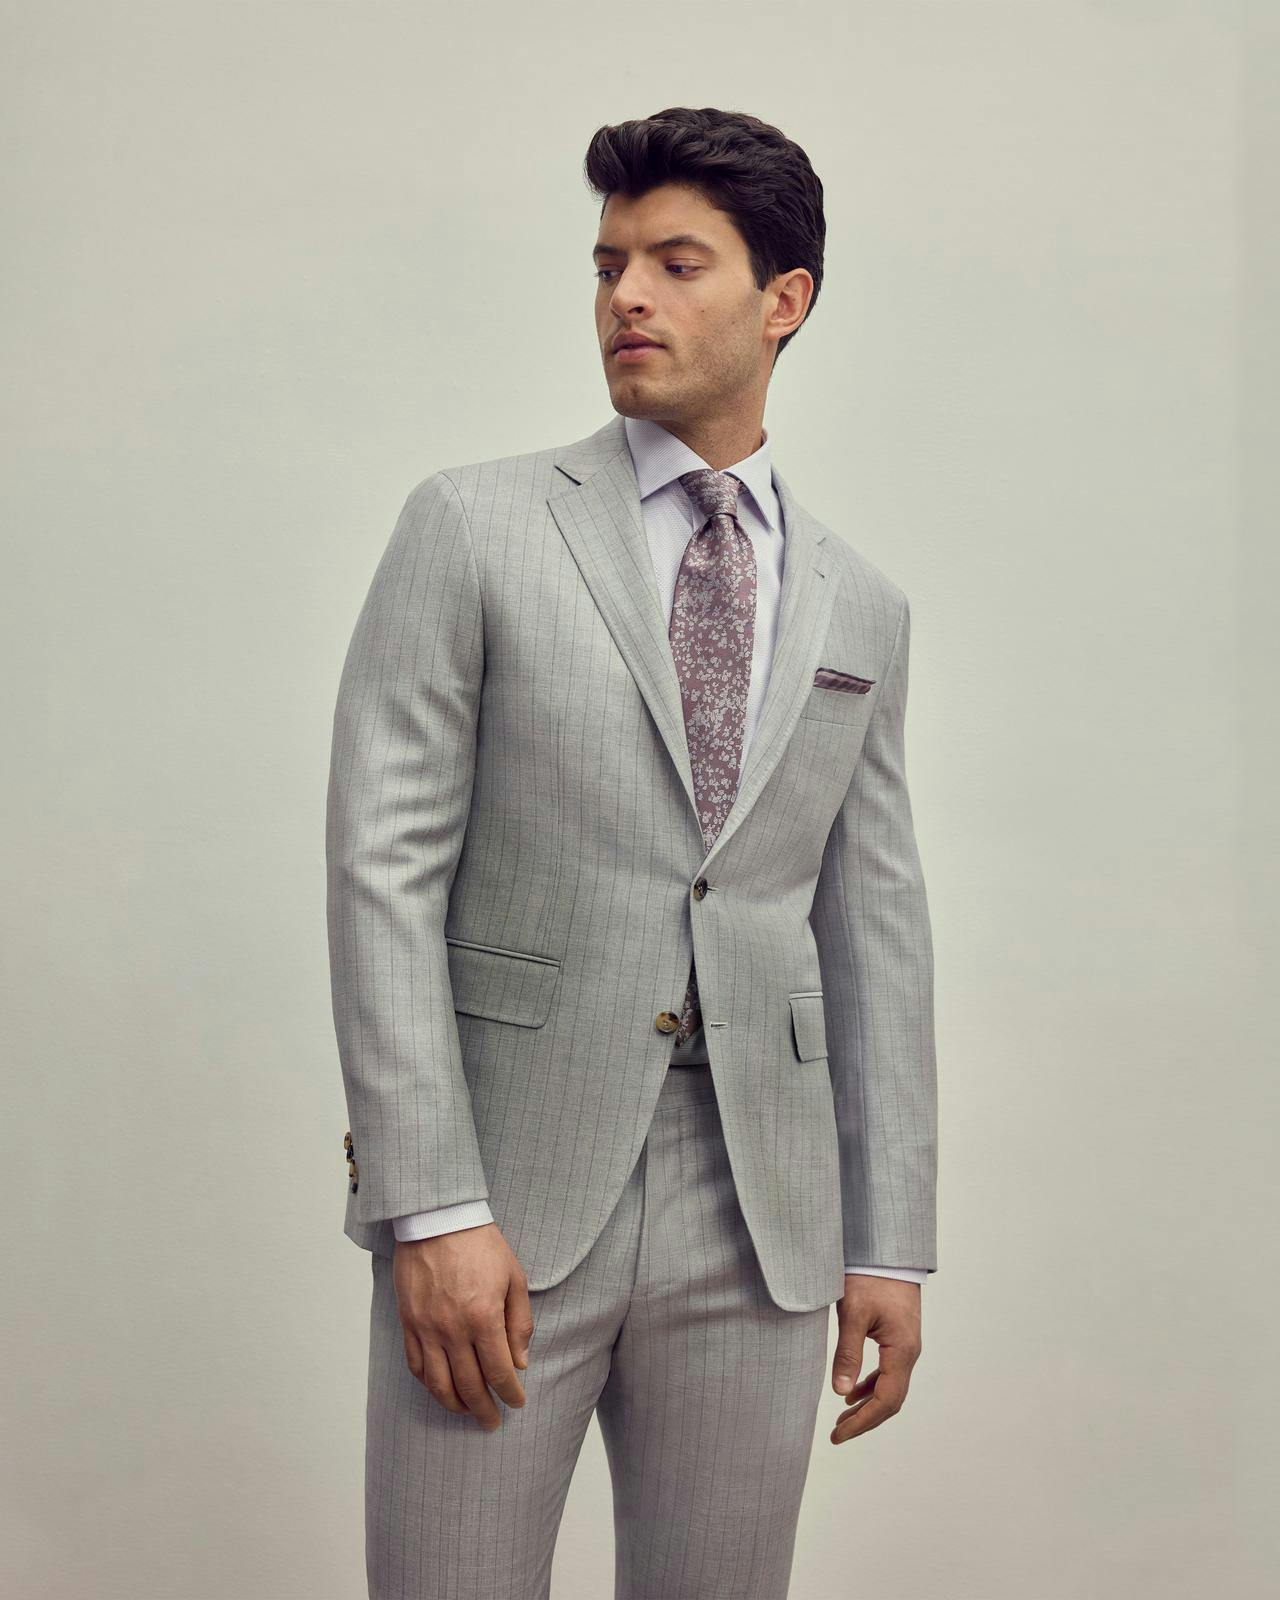 un modèle masculin dans un costume gris clair et une cravate rose